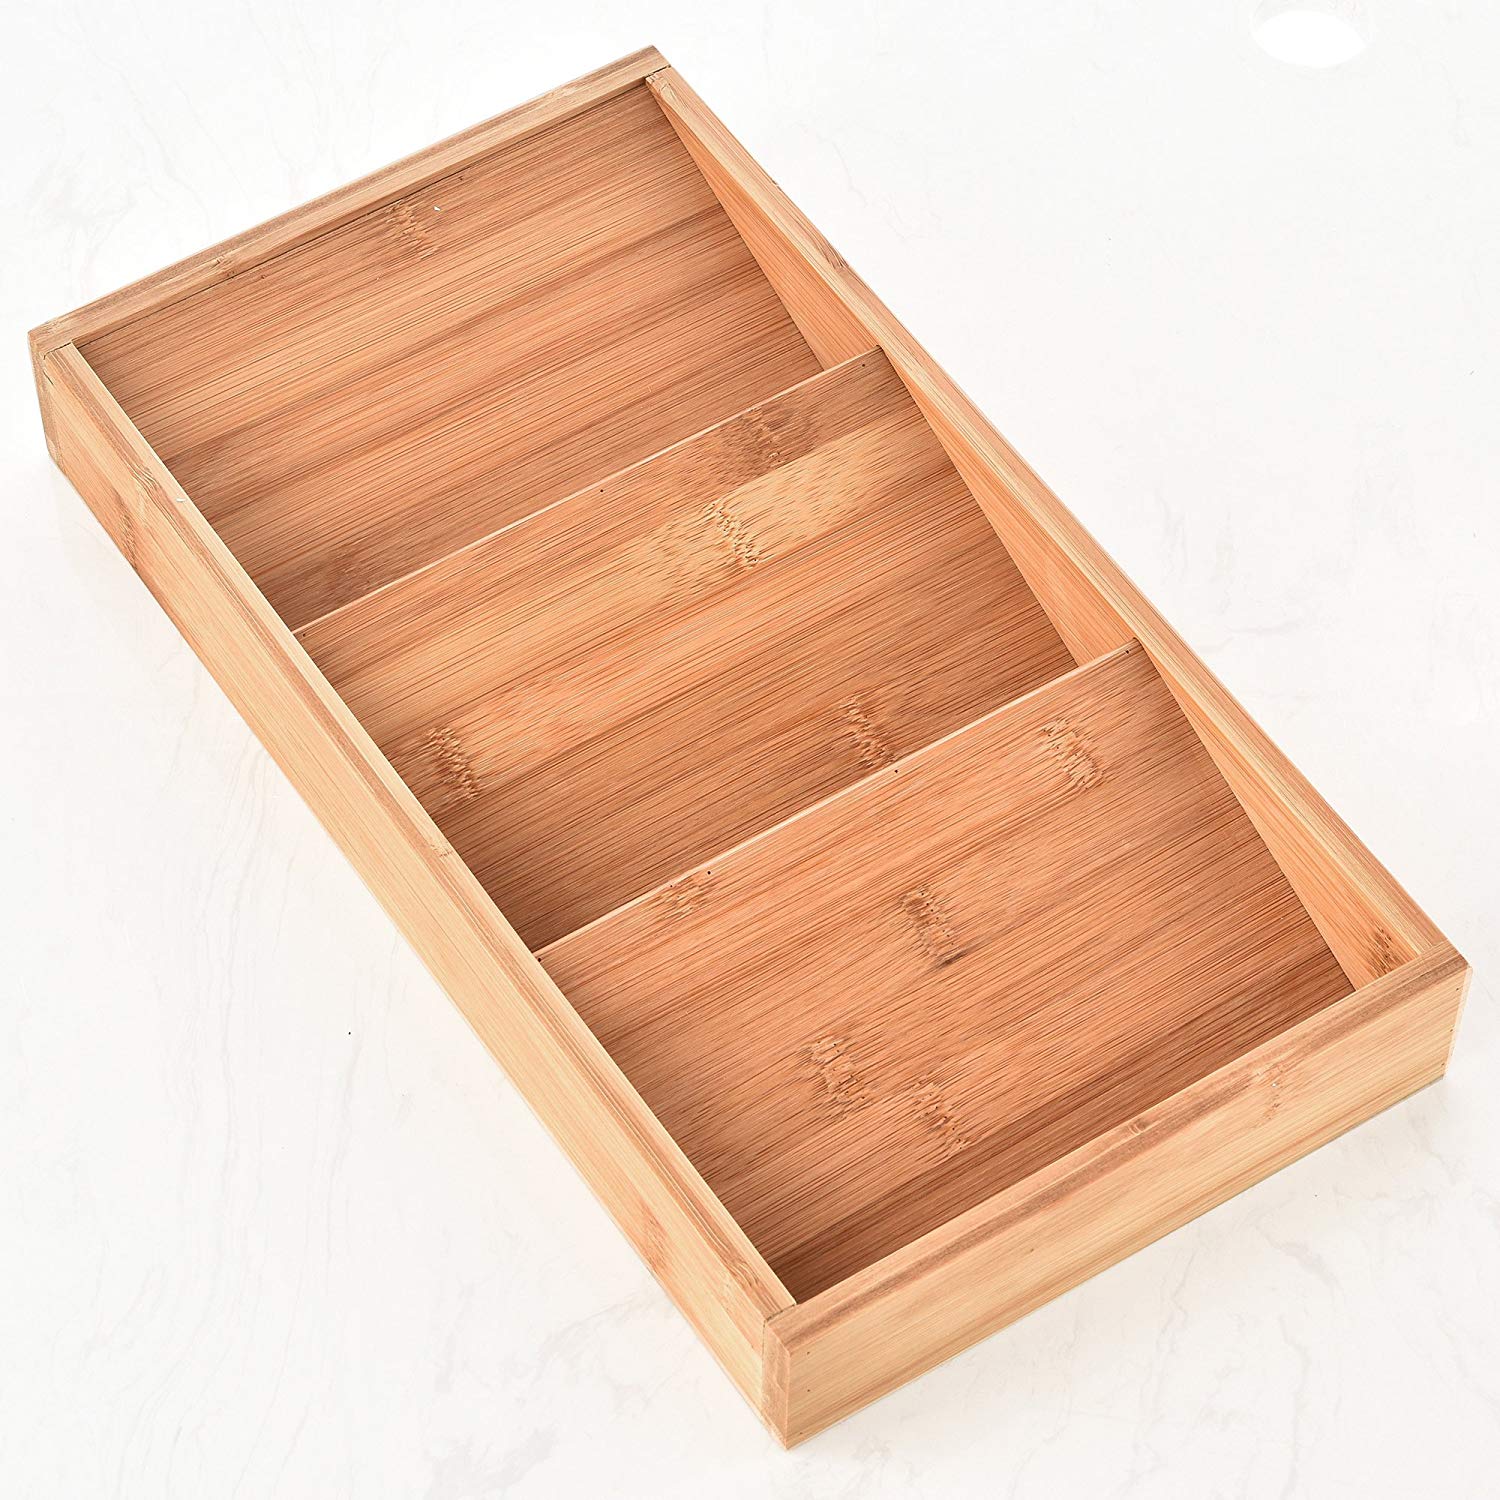 Comllen 3-Tier Cabinet Drawer Tray Organizer In-Drawer Bamboo Spice Rack - Spice Storage/Organization